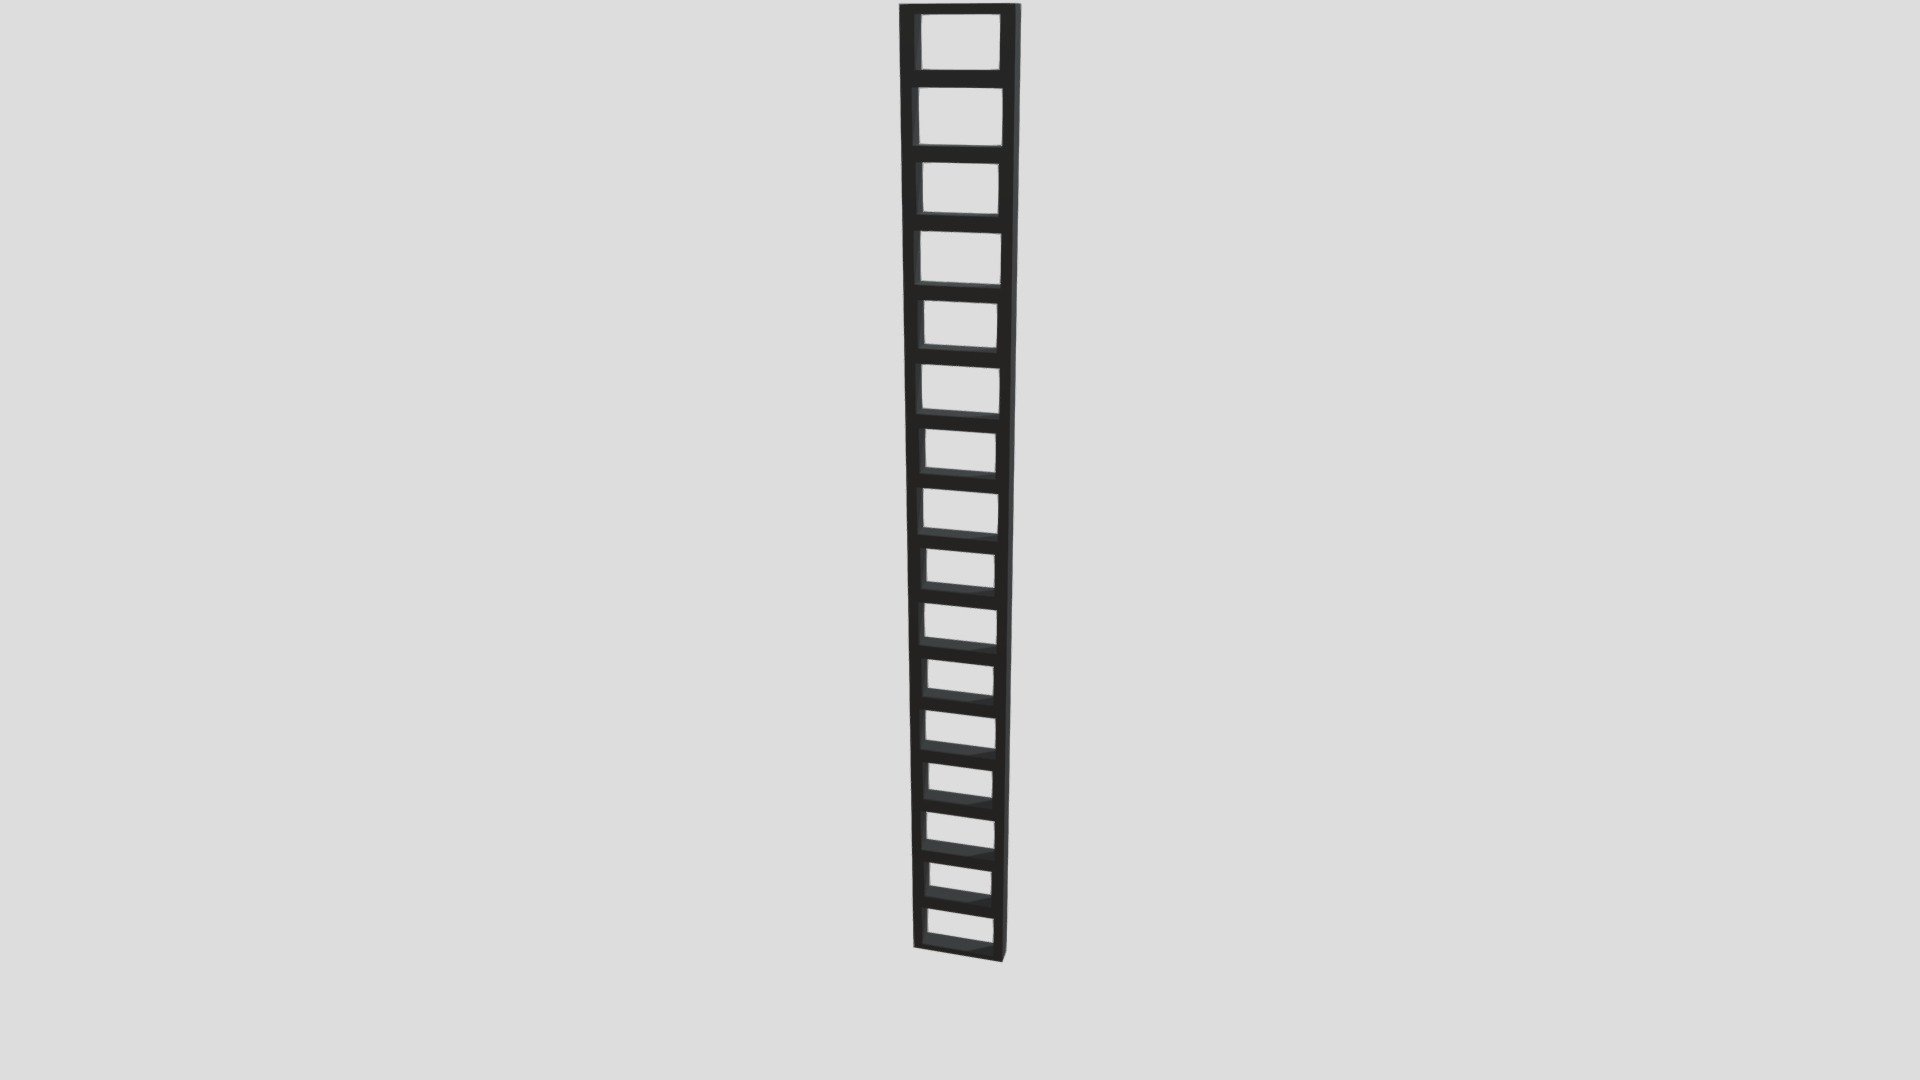 Siege Ladder